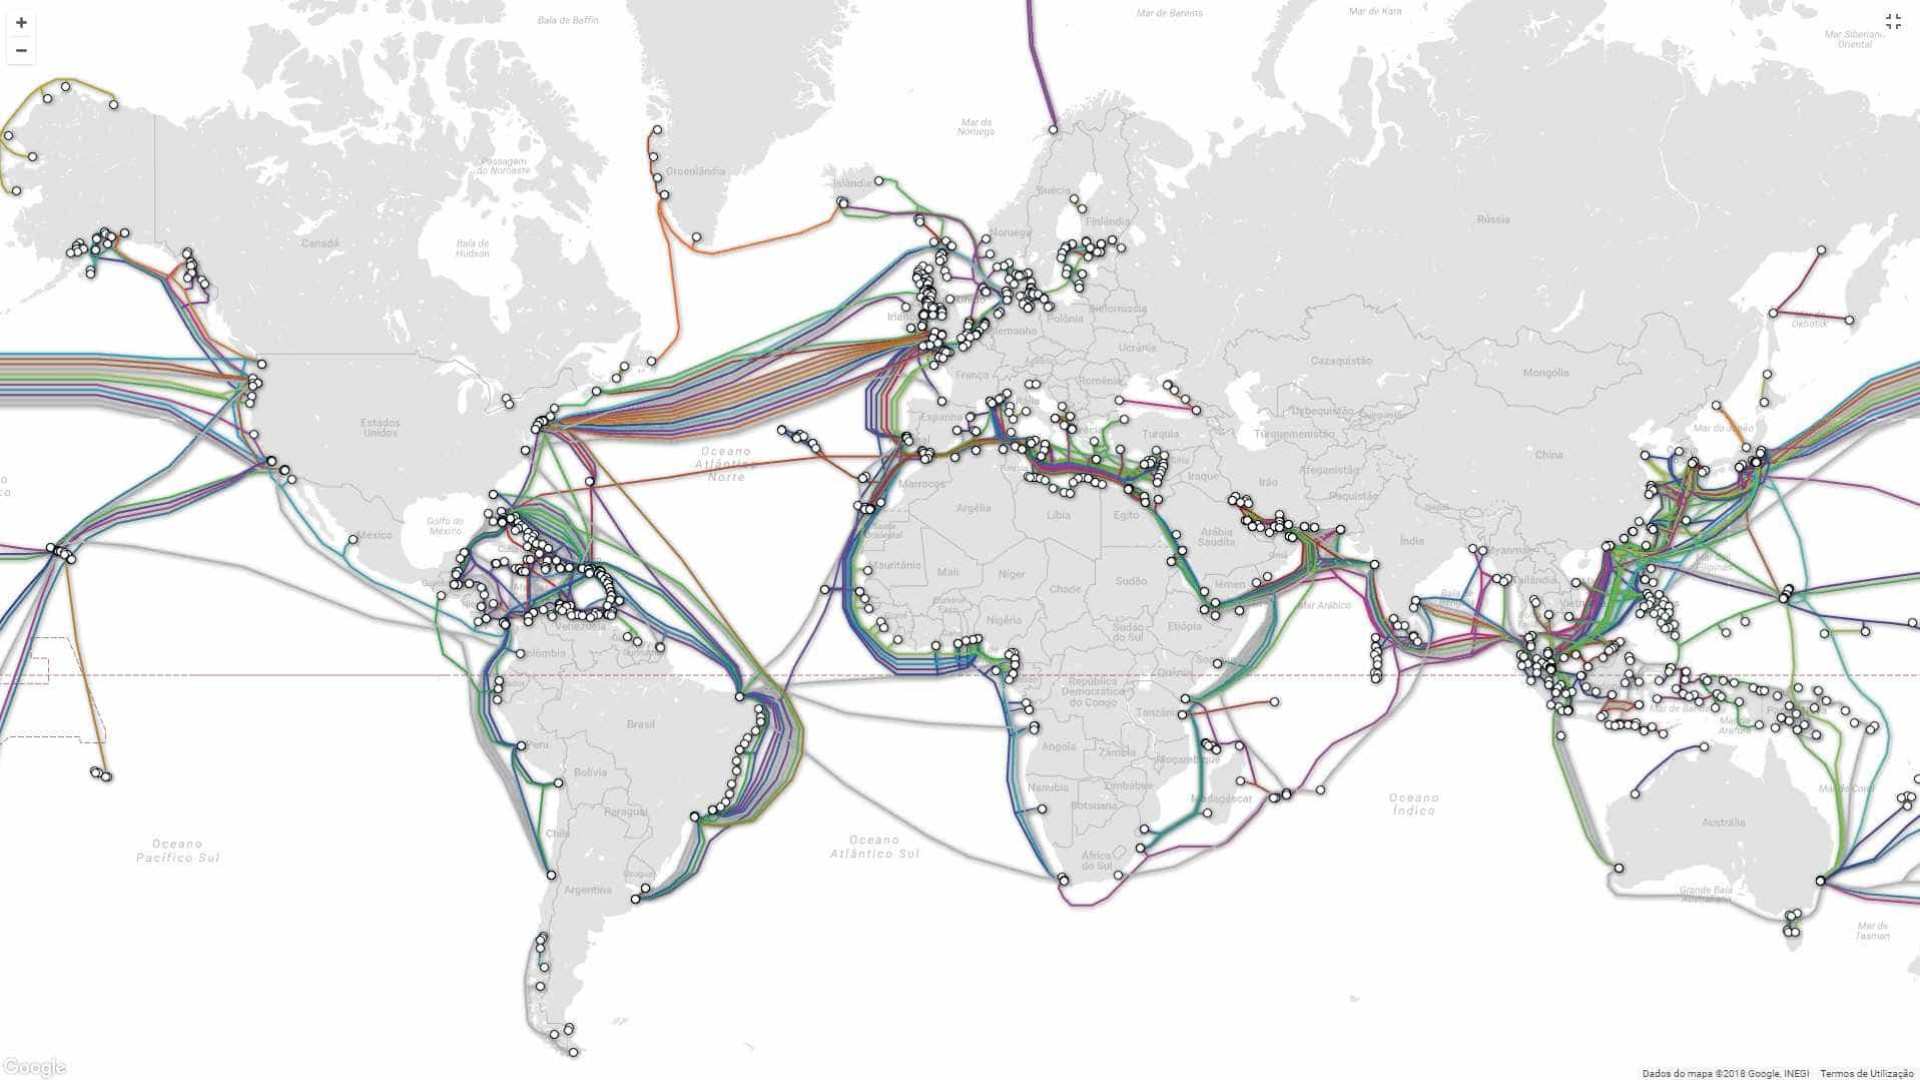 Mapa mostra-lhe os cabos que ajudam a manter 'viva' a internet